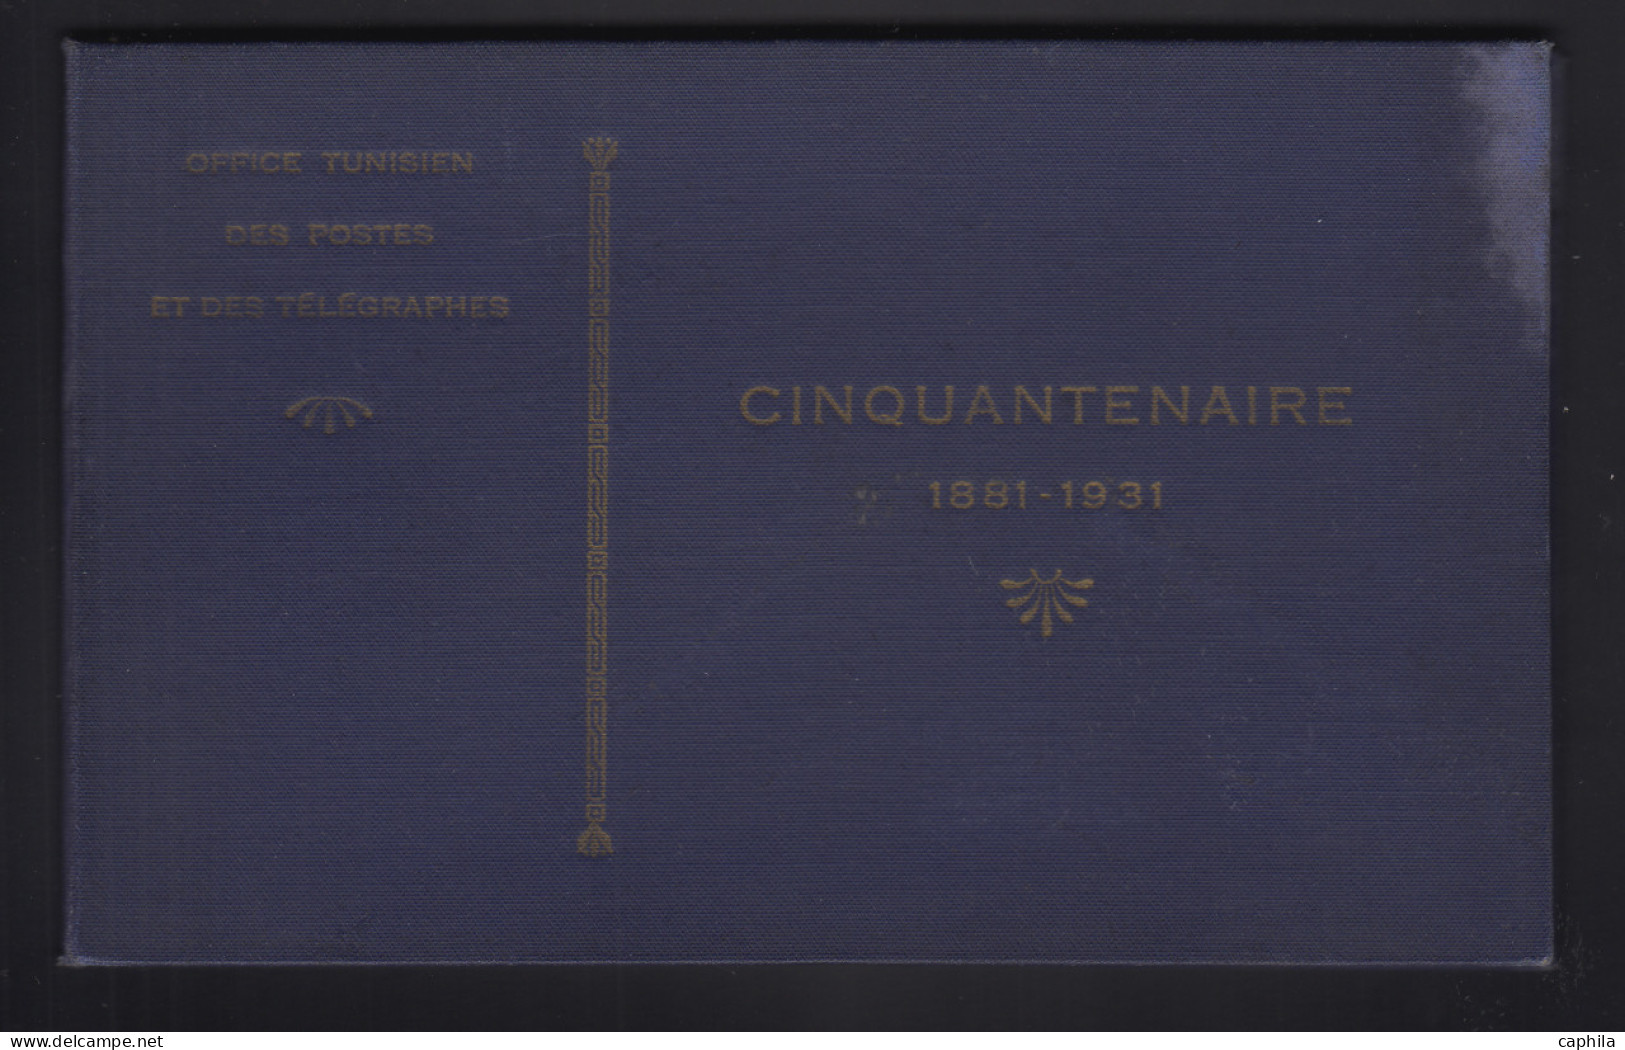 - TUNISIE, 1888/1955, X, Obl., dont 181/180 en livret des Postes de 1931, en pochette - Cote : 720 €